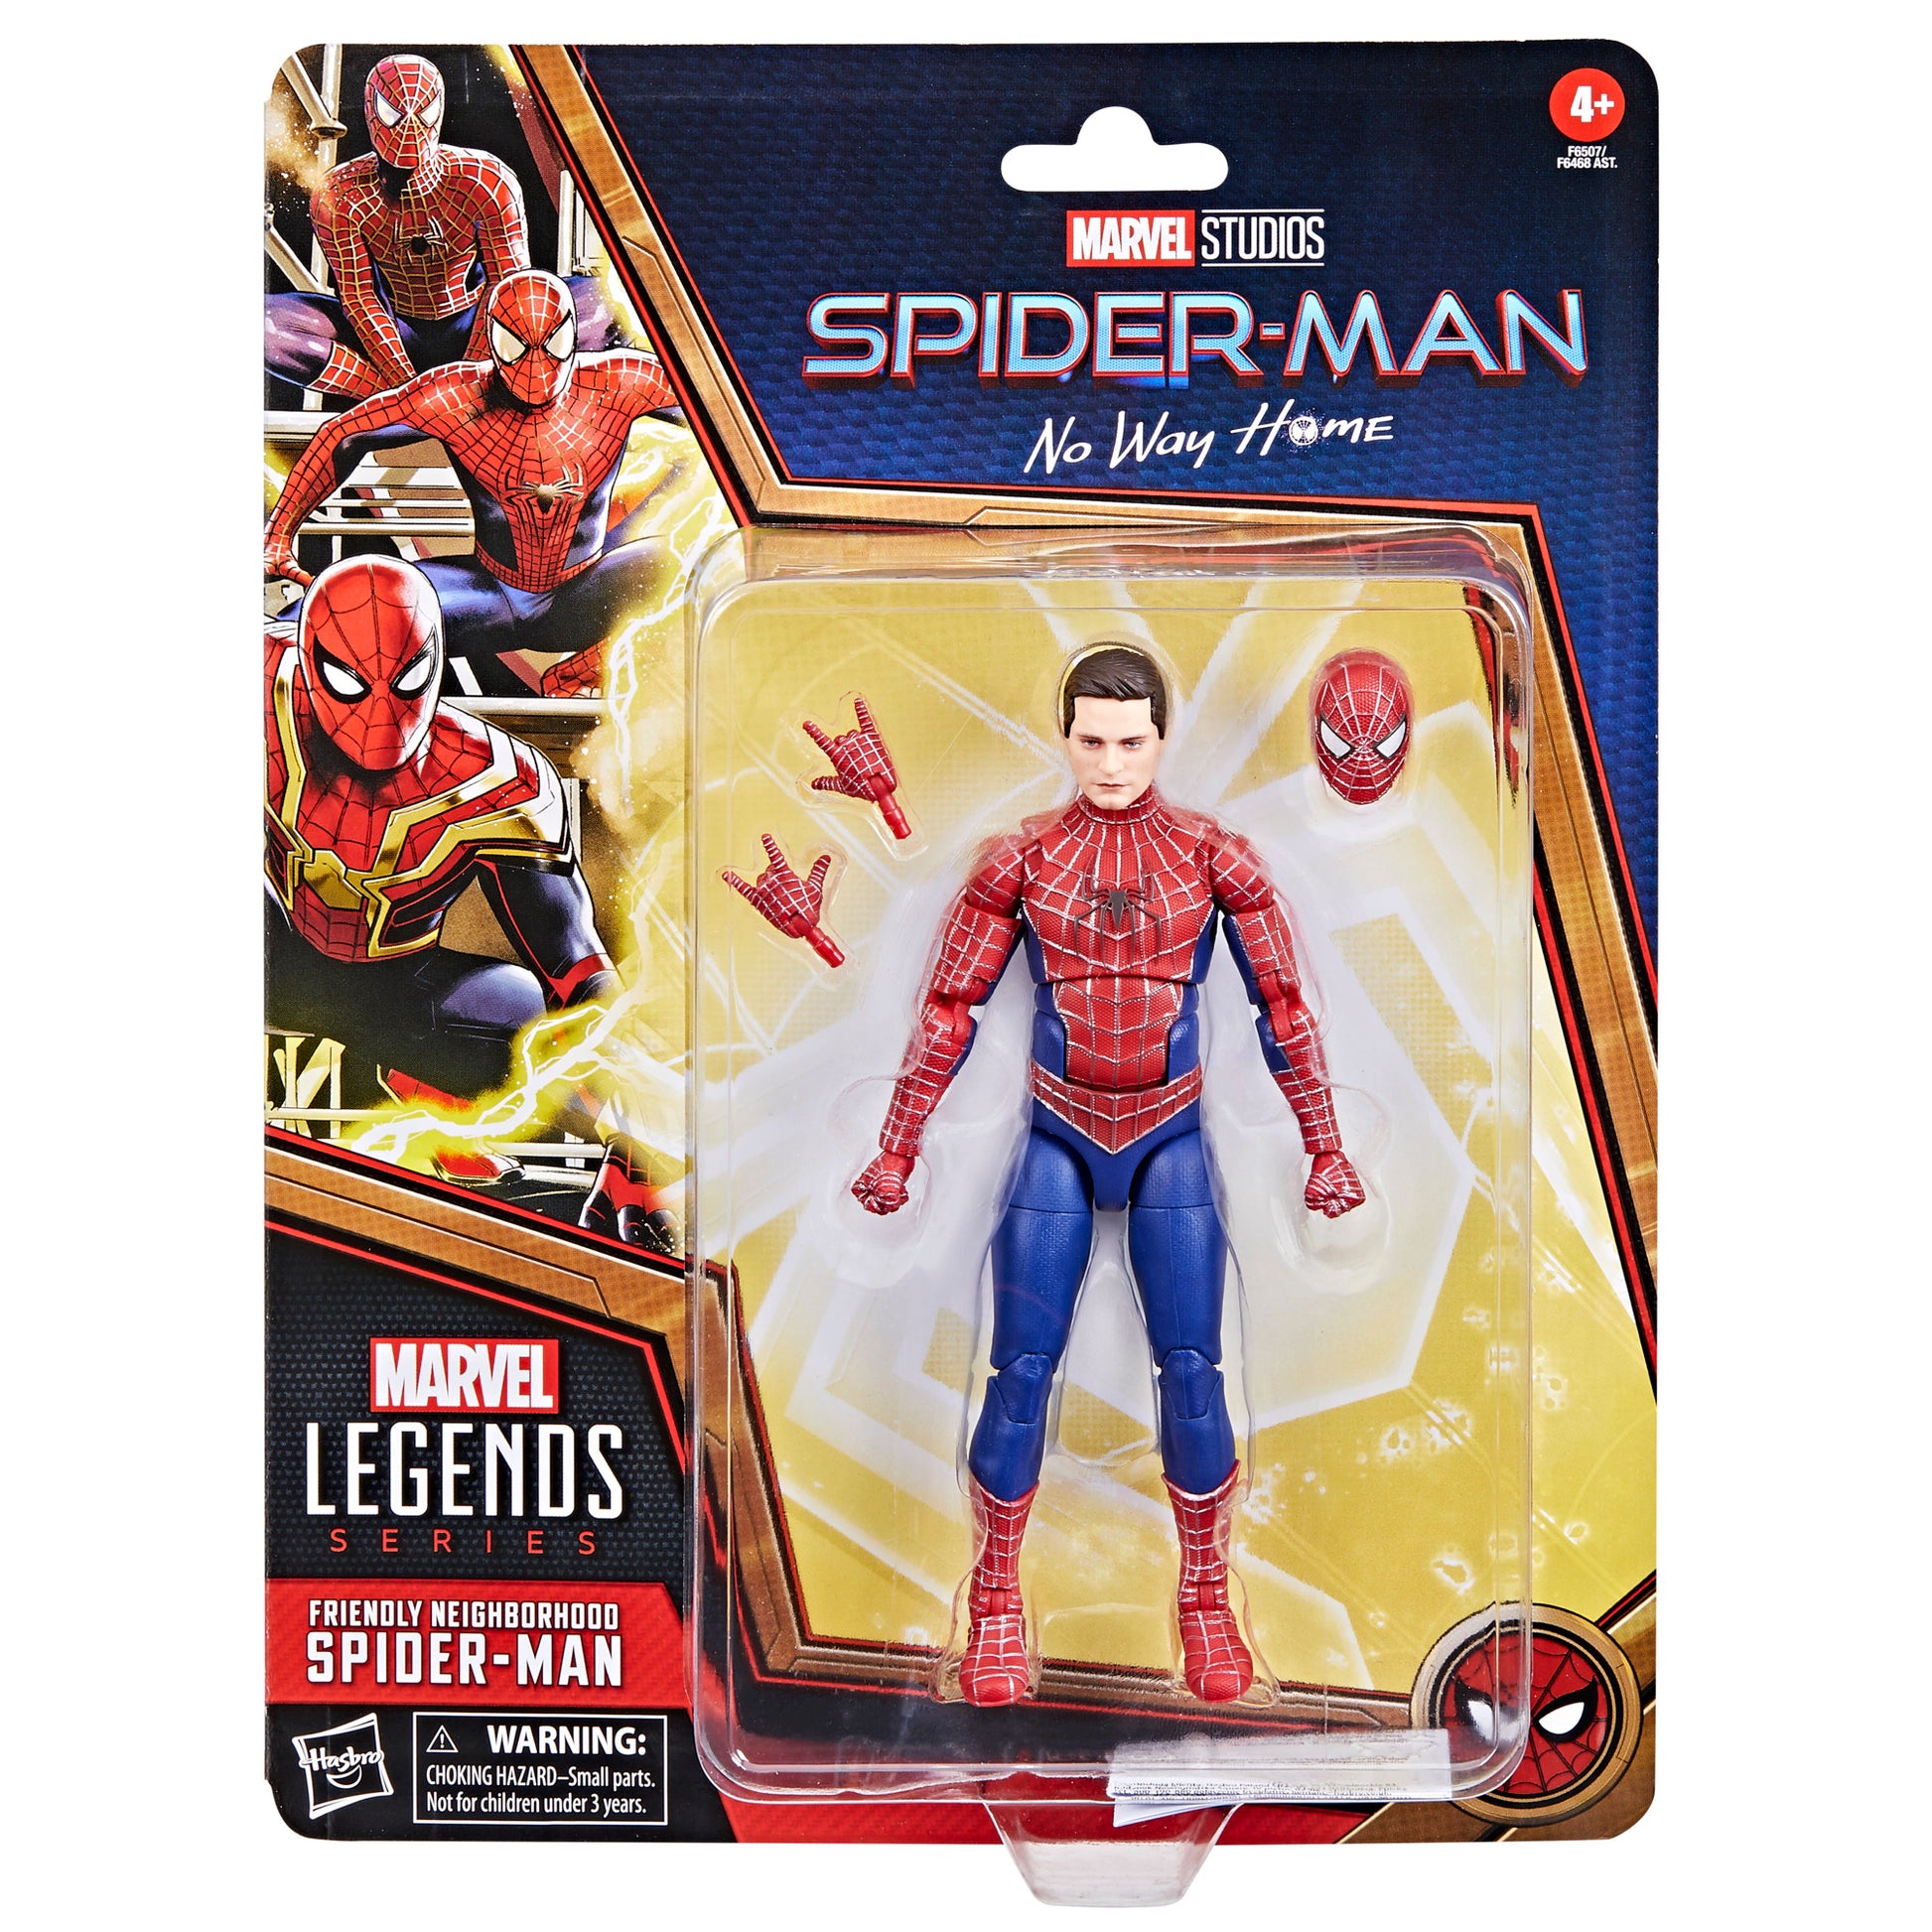 Marvel Legends Series Friendly Neighborhood Spider-Man, 6 Marvel Legends Action Figures HERETOSERVEYOU